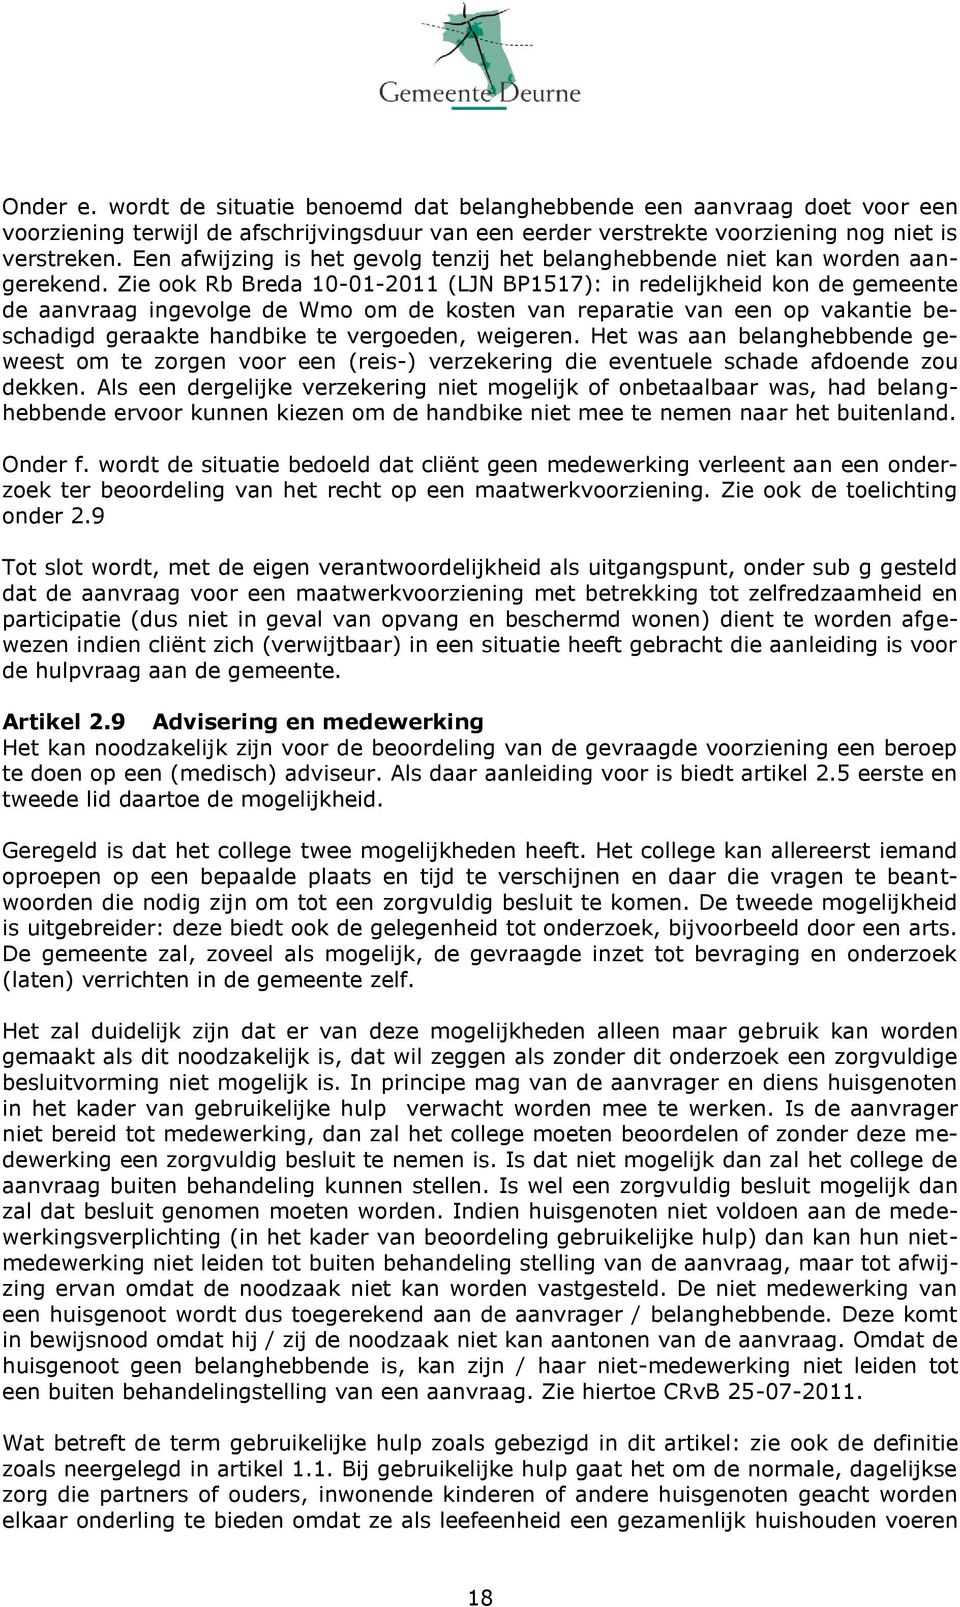 Zie ook Rb Breda 10-01-2011 (LJN BP1517): in redelijkheid kon de gemeente de aanvraag ingevolge de Wmo om de kosten van reparatie van een op vakantie beschadigd geraakte handbike te vergoeden,